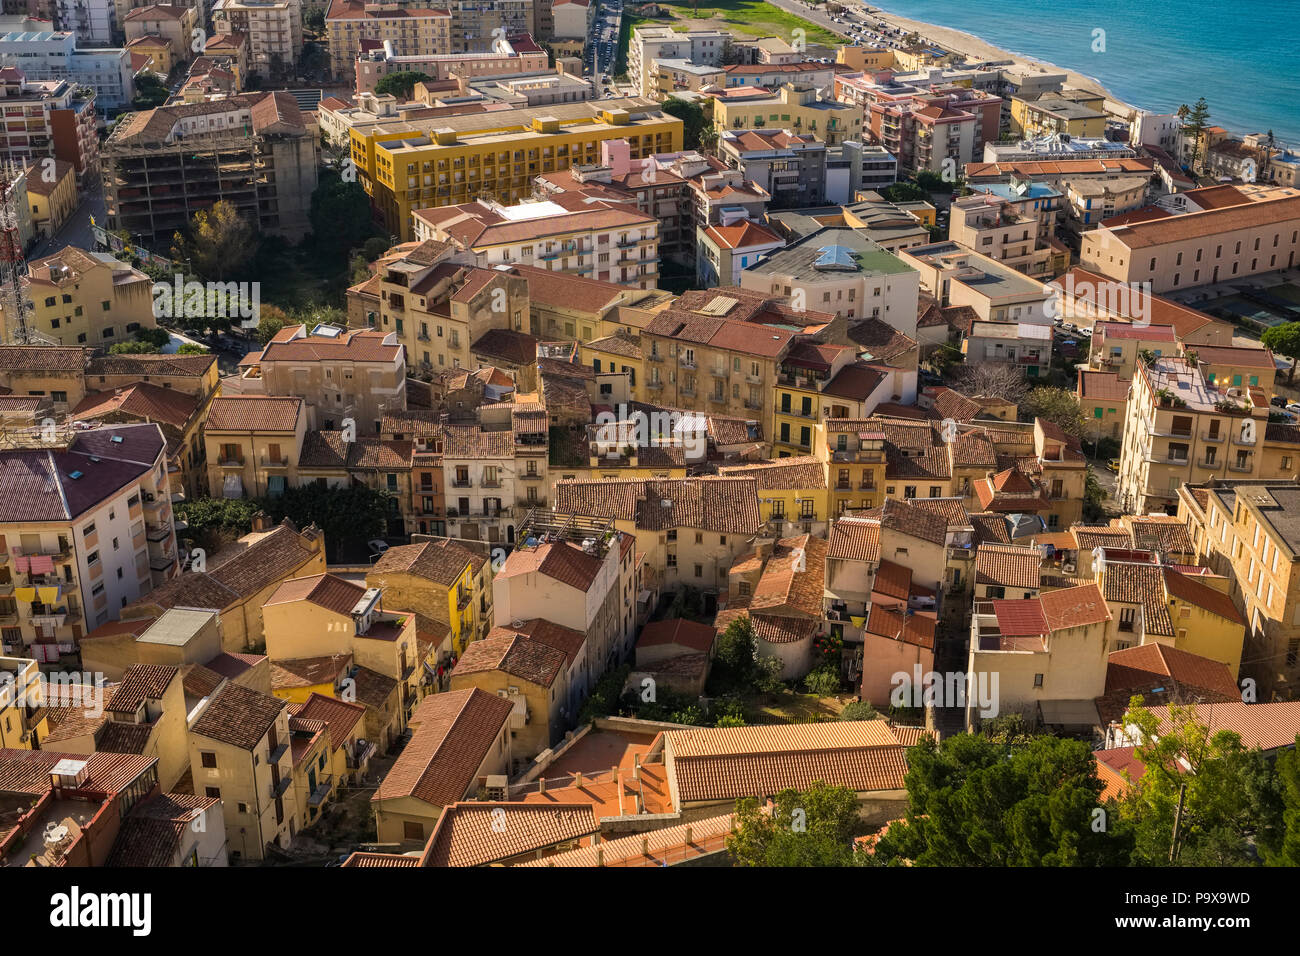 Vue aérienne de l'architecture de la ville de paniers dense Cefalu, Sicile, Italie, Europe Banque D'Images